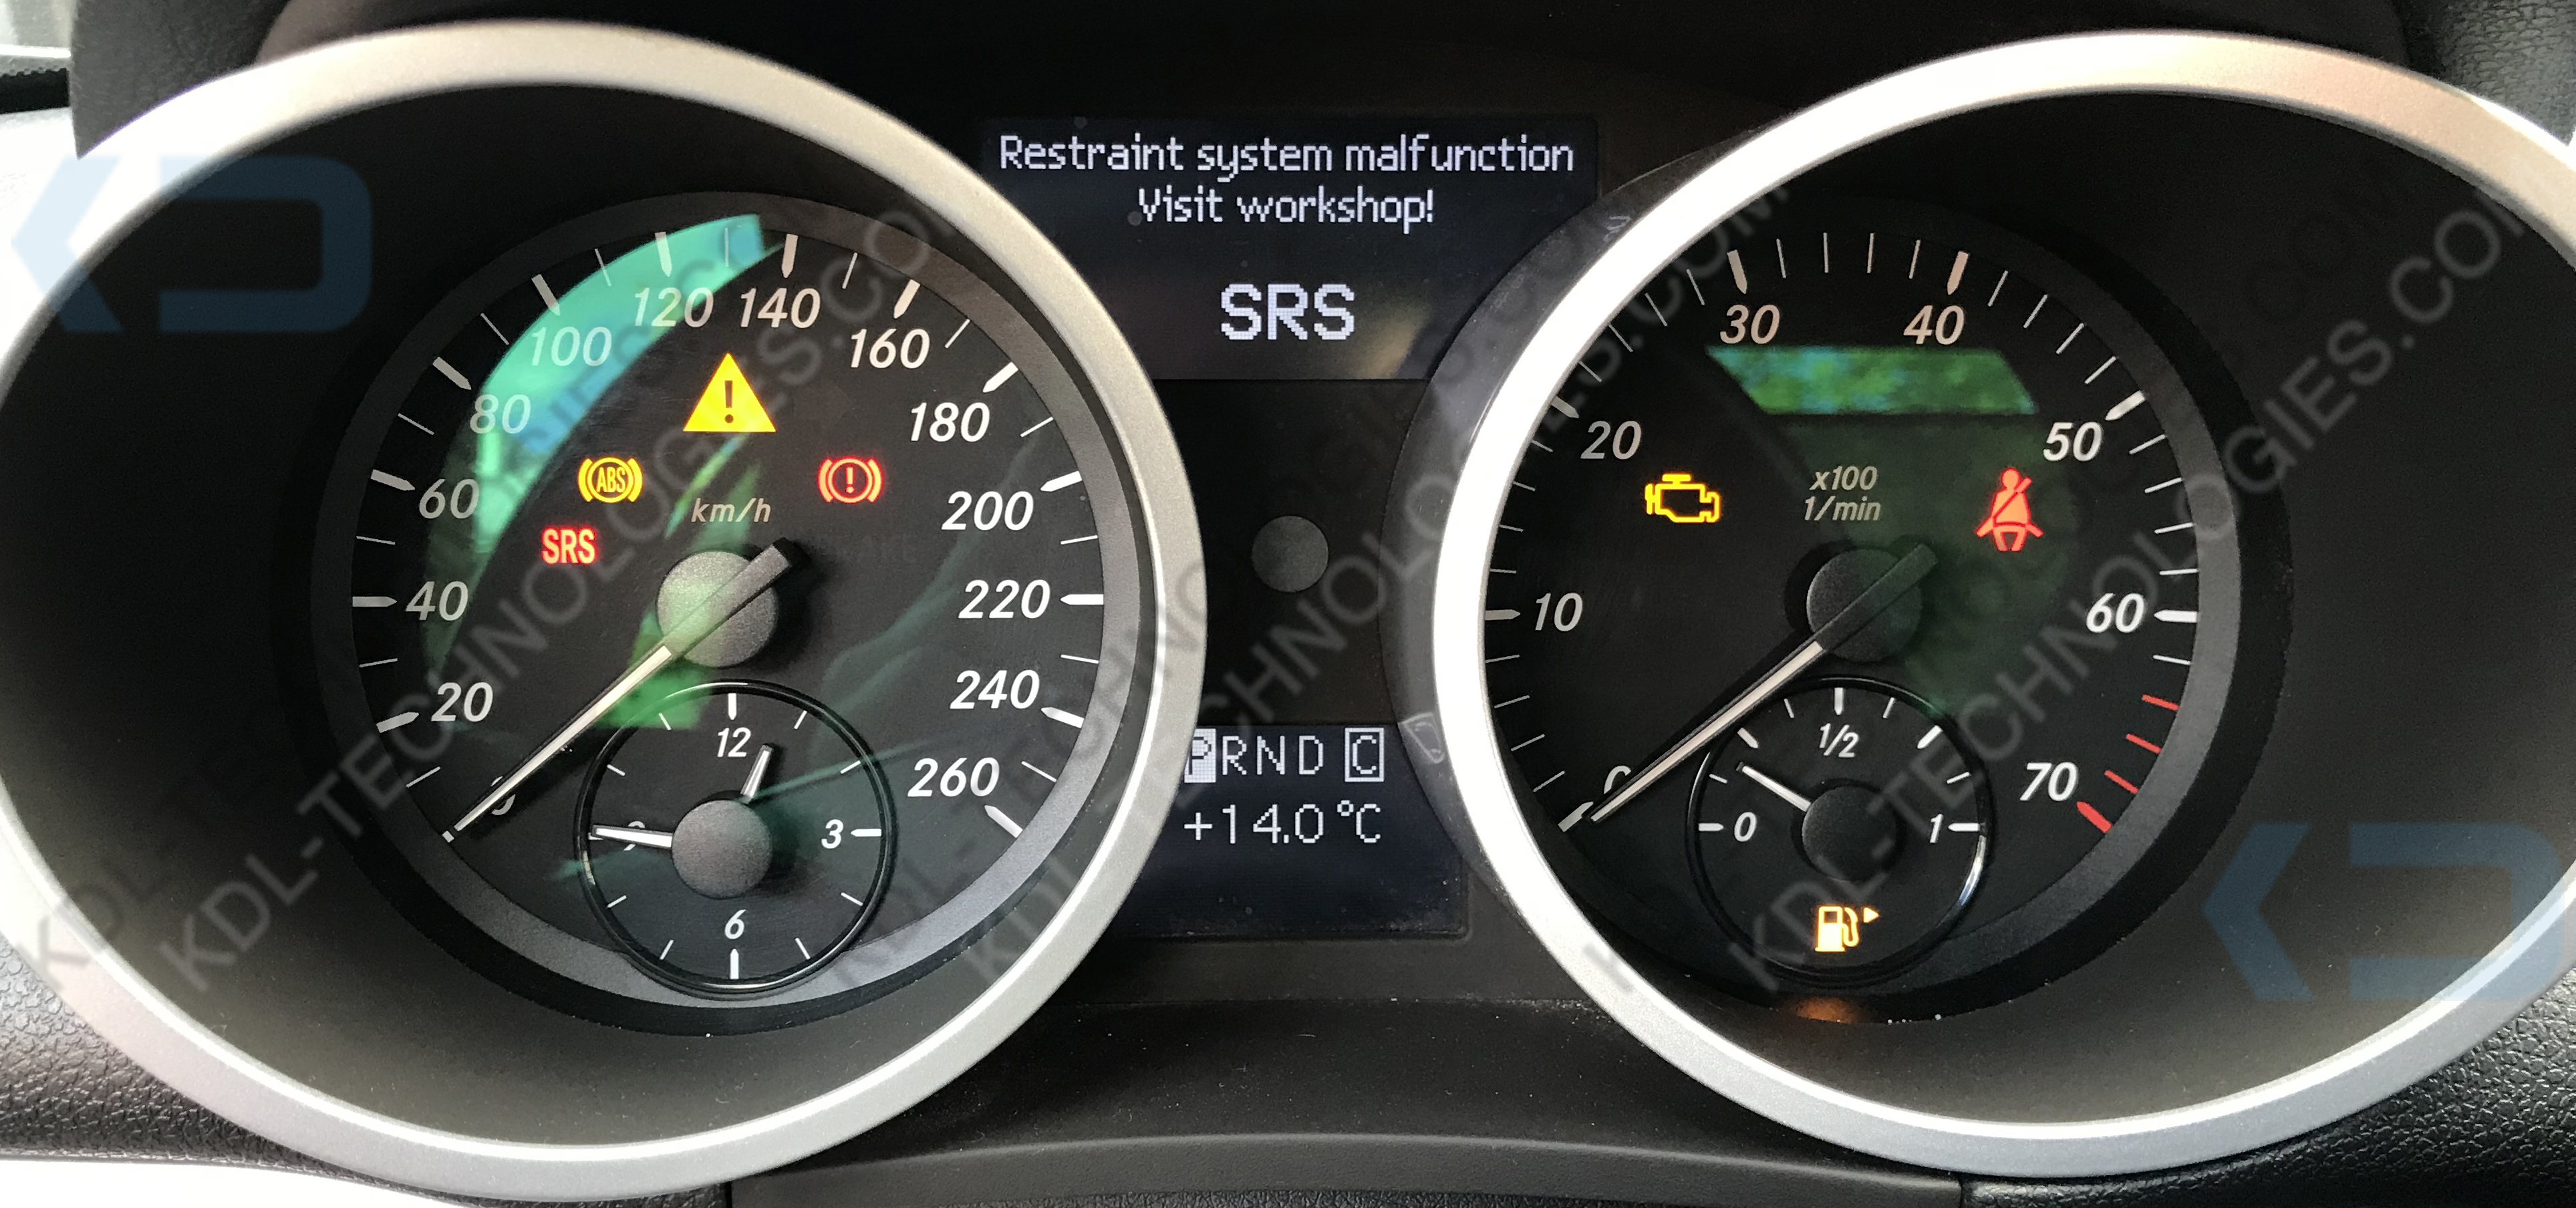 Dlaczego W Samochodzie Świeci Się Kontrolka Srs / Airbag? - Emulator Maty - Co To Jest?